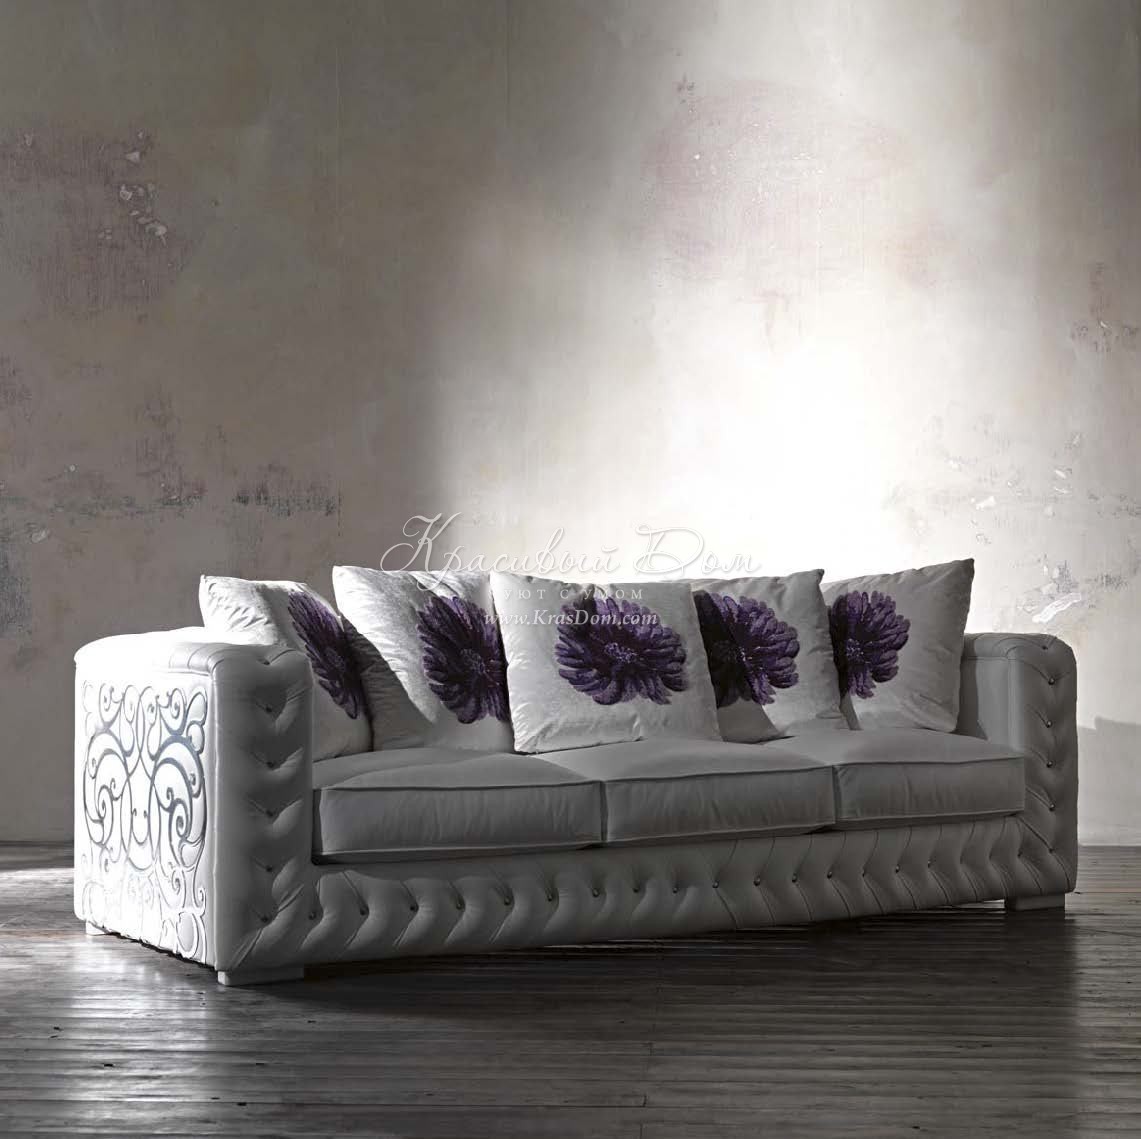 Диван трехместный - bst/041. Светло-серый диван с подушками, украшеннымифиолетовыми цветами от фабрики Bastex